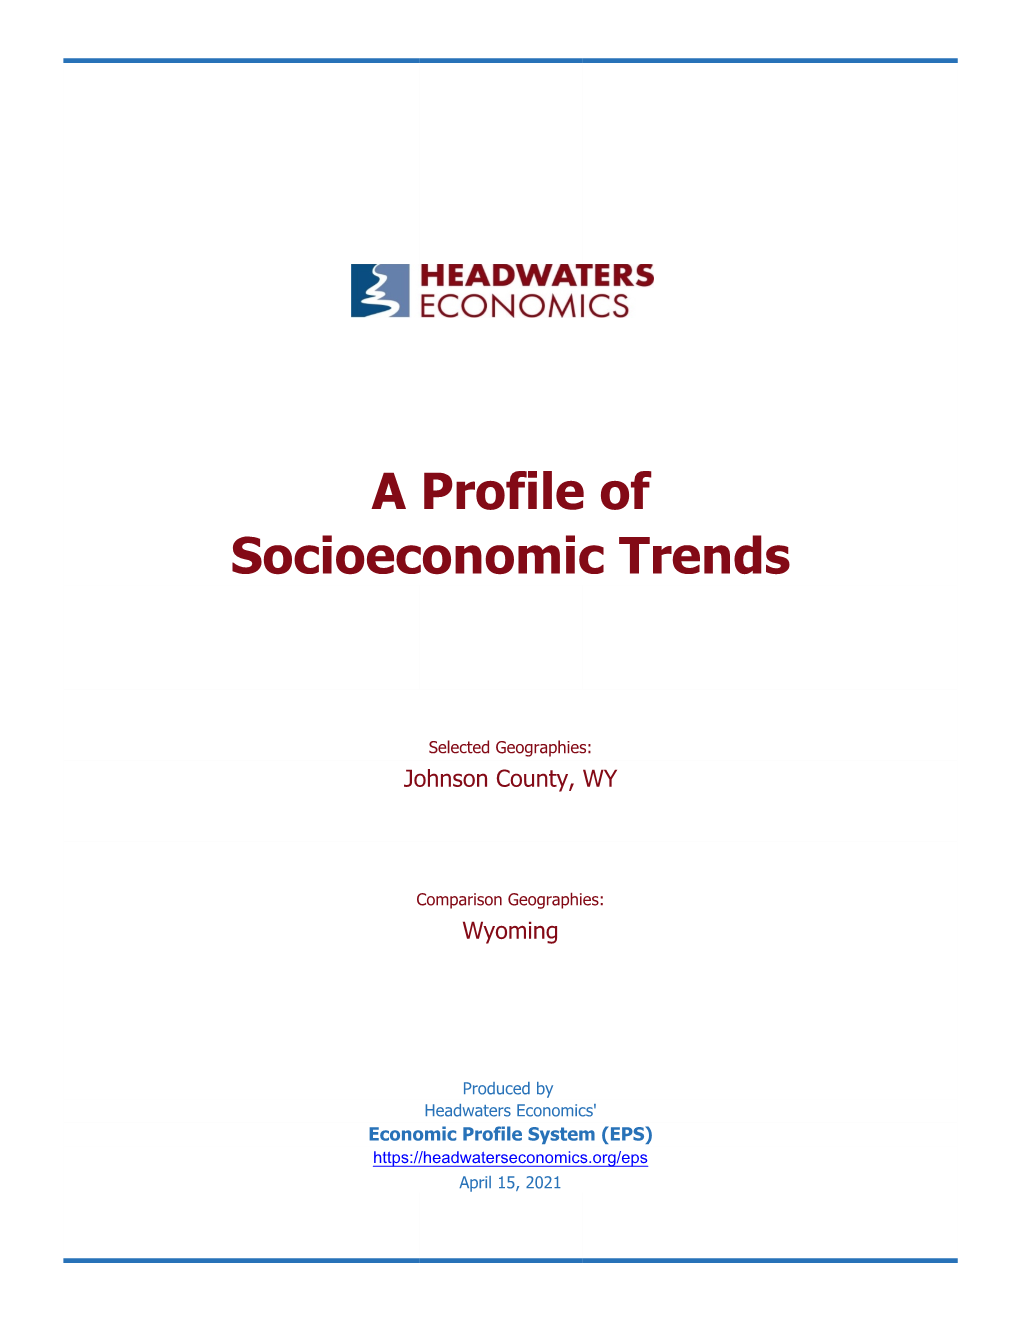 A Profile of Socioeconomic Trends